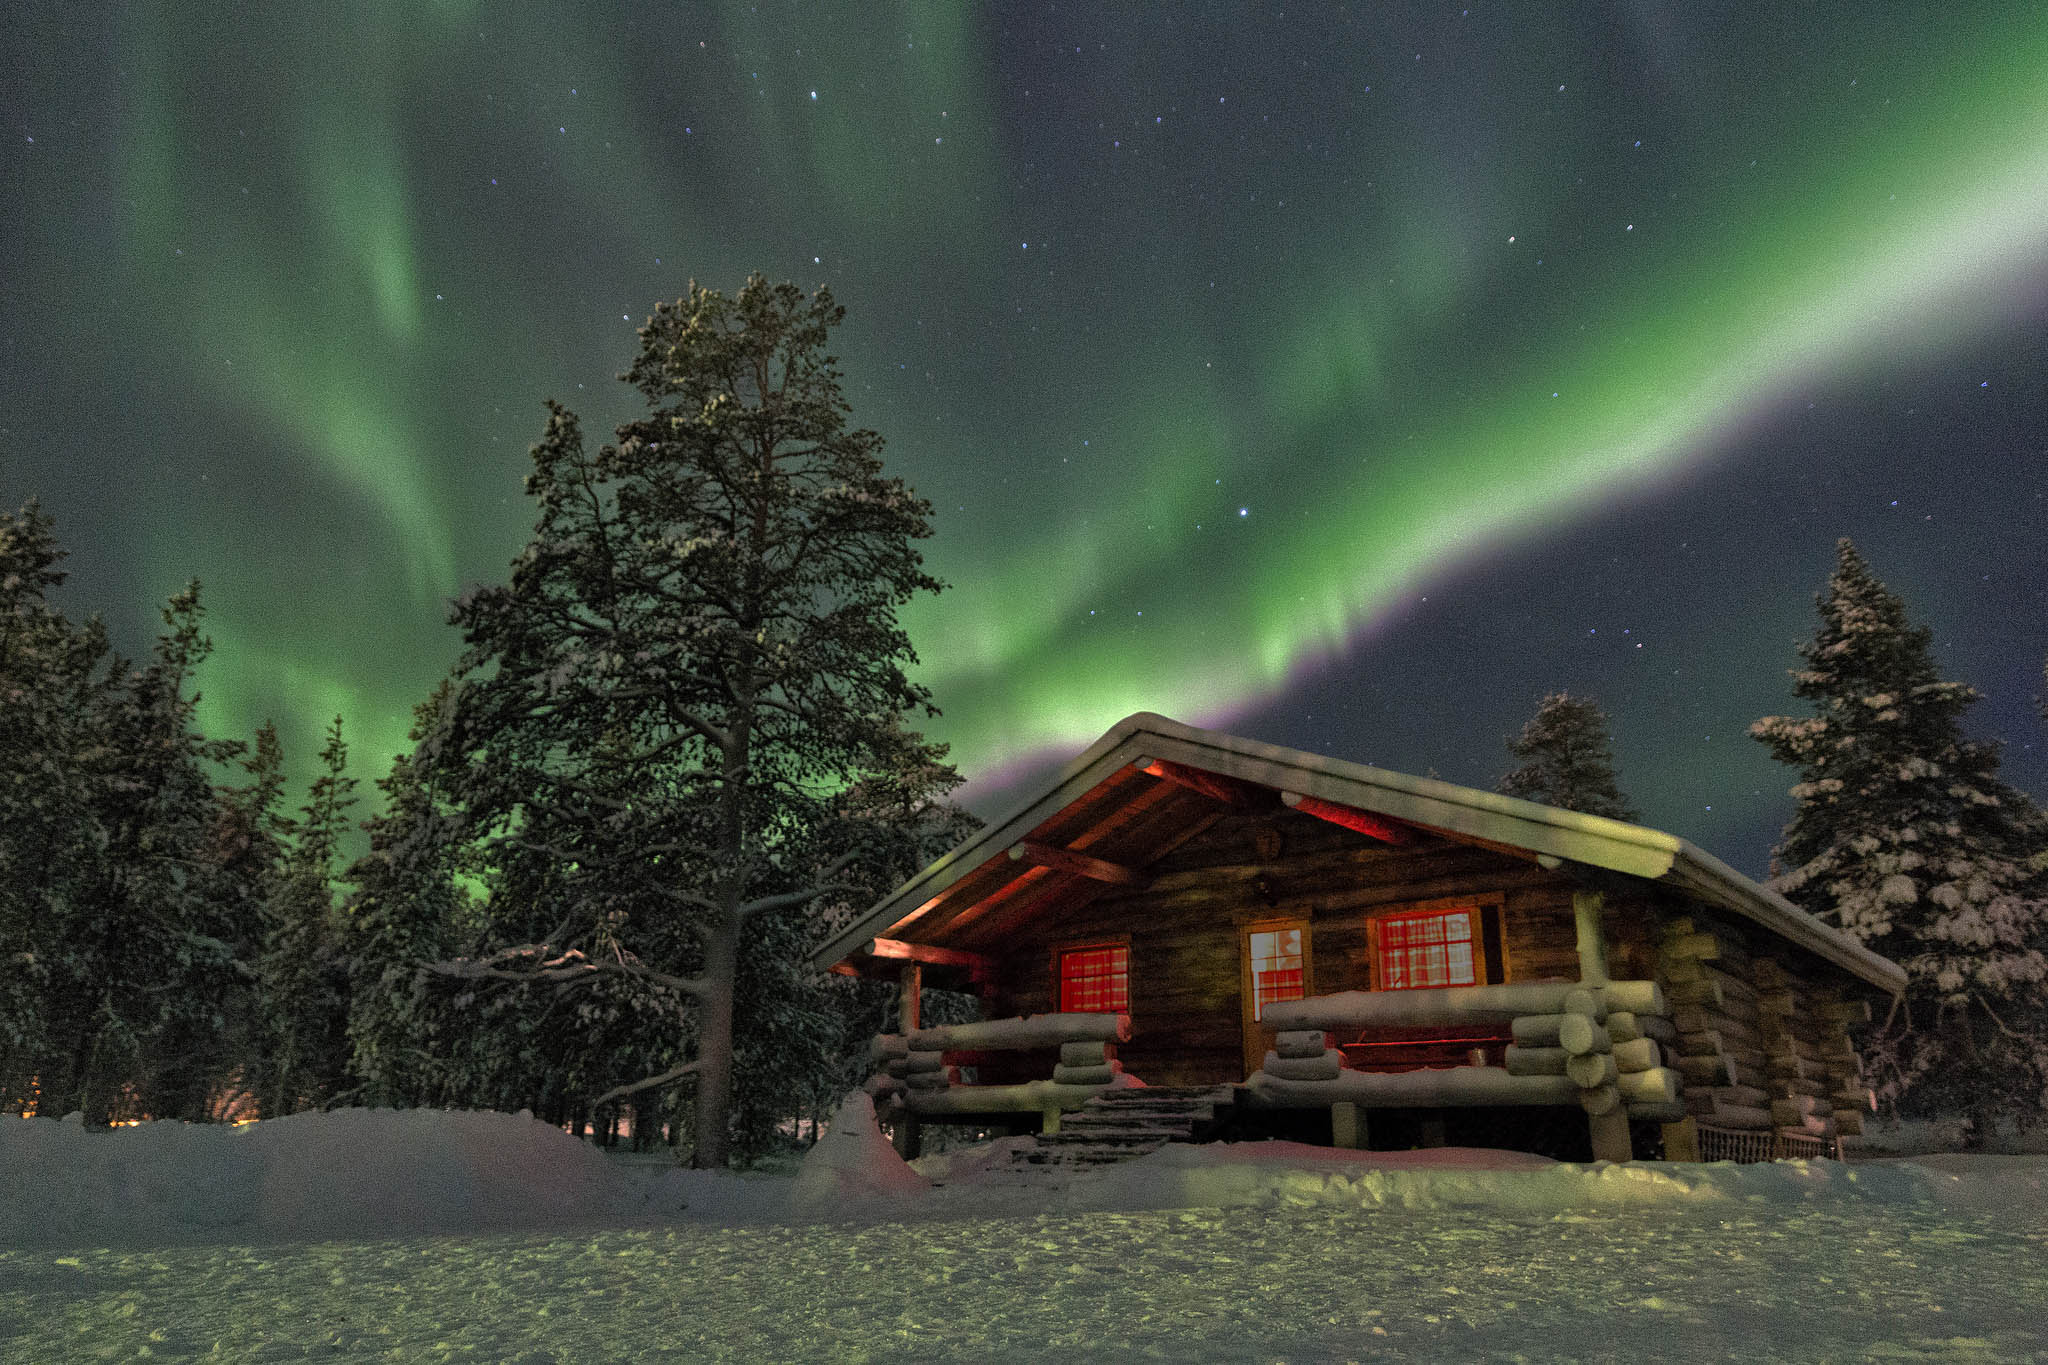 Wintervakantie naar Fins Lapland met Arke1